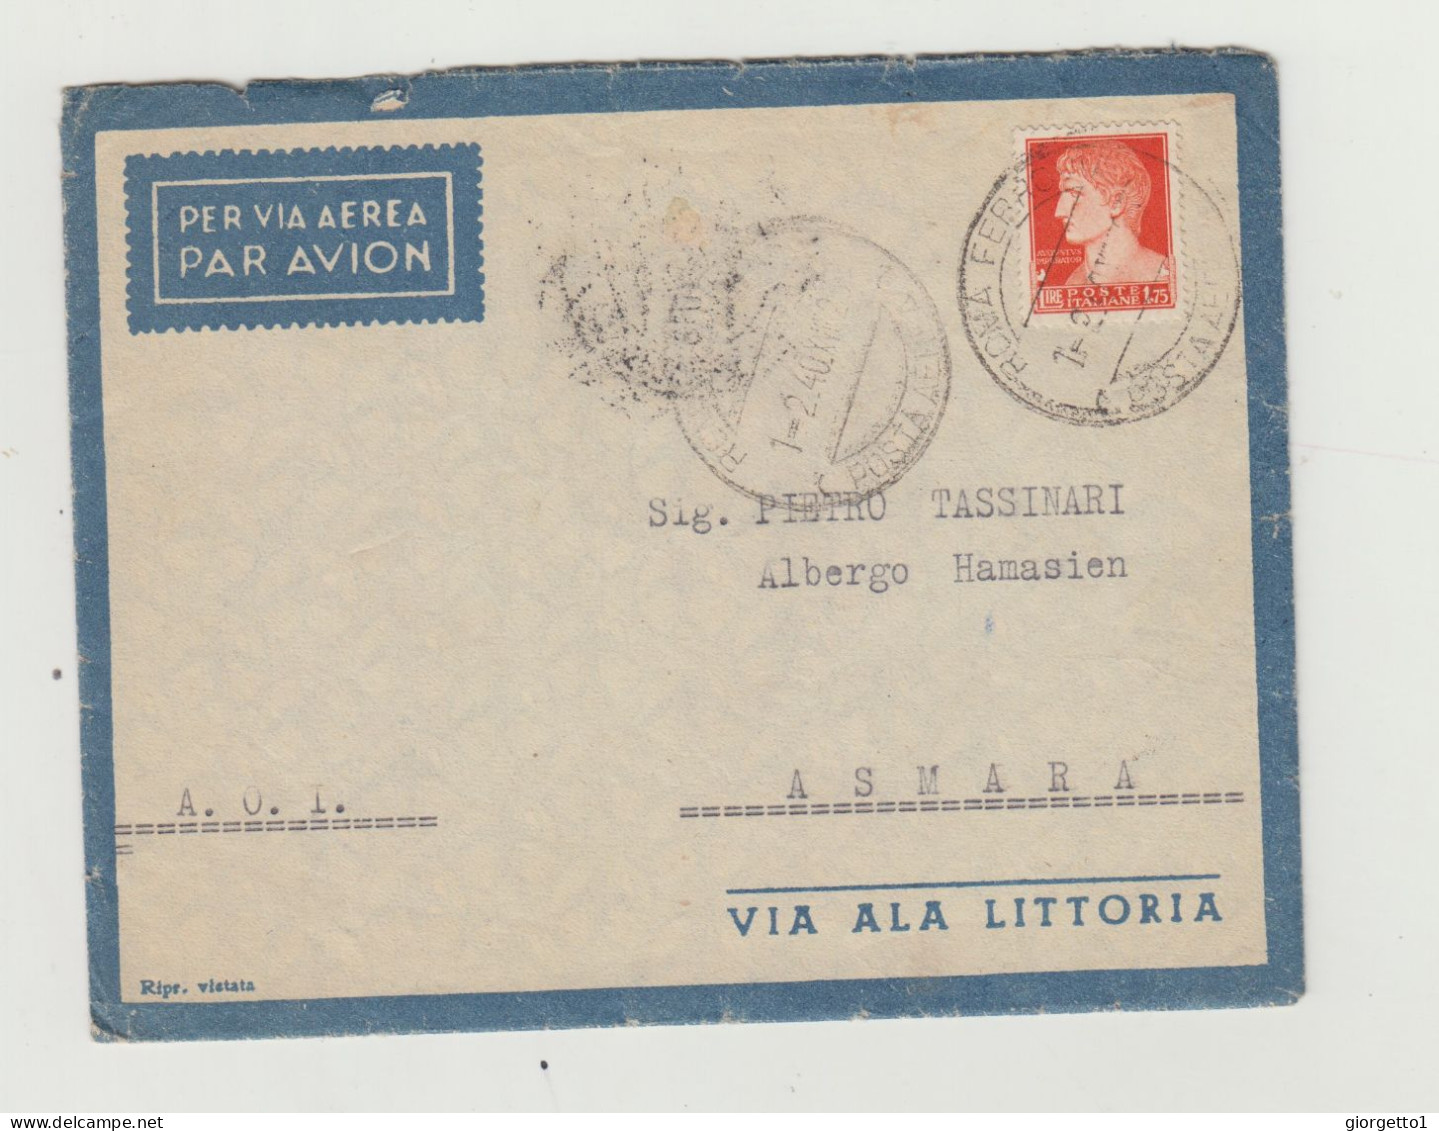 BUSTA CON LETTERA - VIA ALA LITTORIA - ERITREA VIAGGIATA  NEL 1940 VERSO ASMARA DA ROMA WW2 A.O.I.- COLONIA ERITREA - Marcofilía (Aviones)